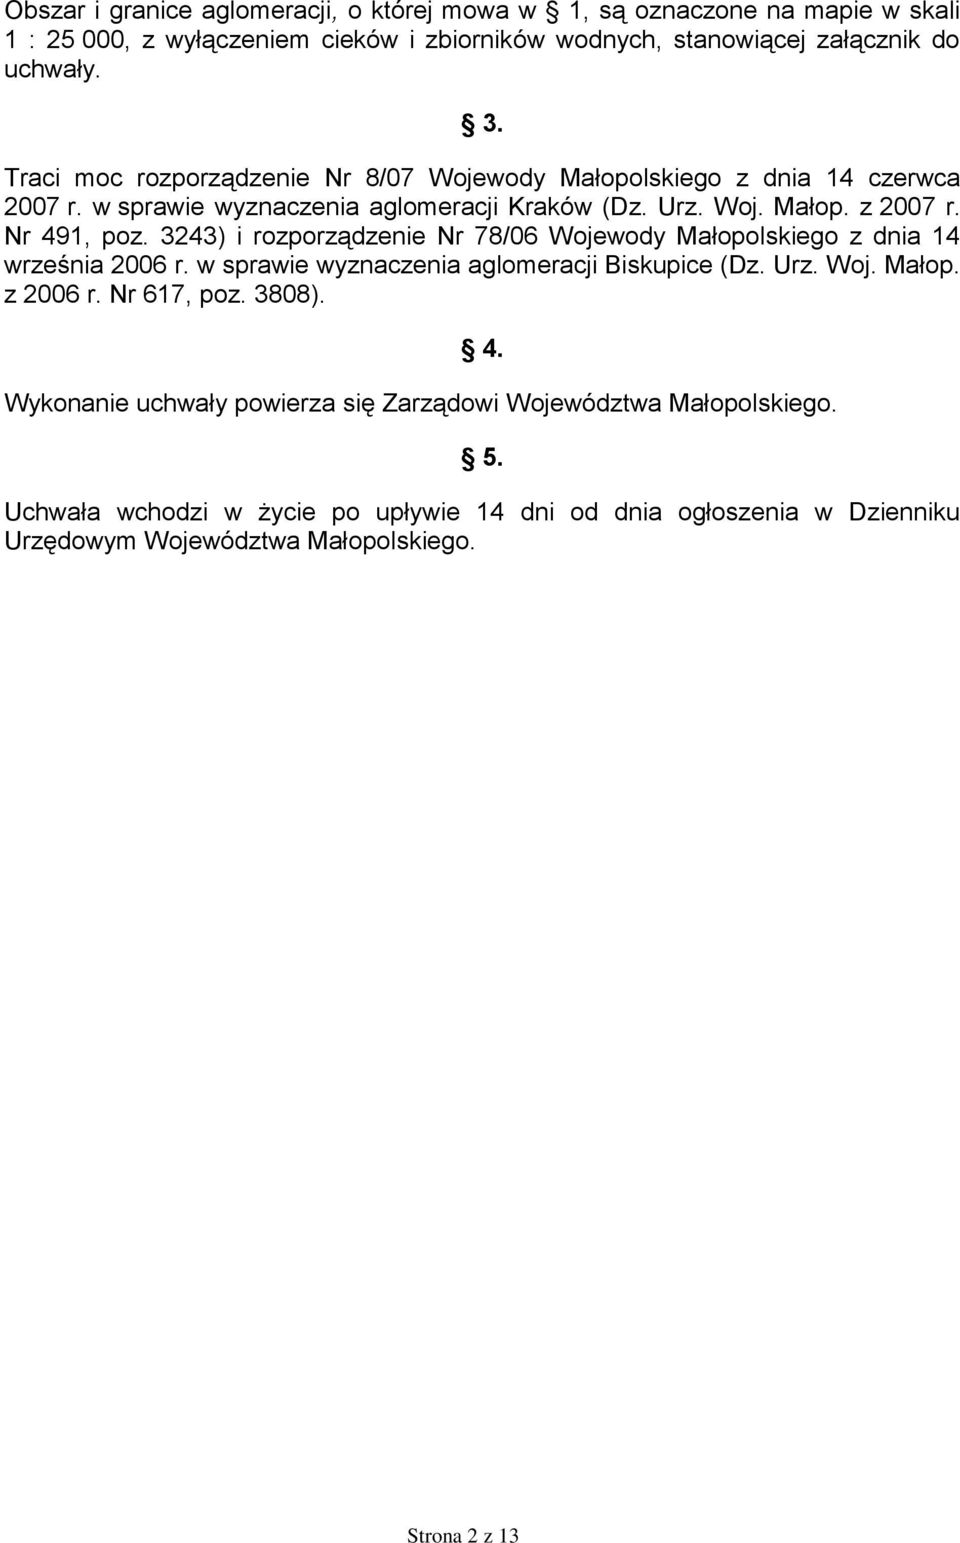 3243) i rozporządzenie Nr 78/06 Wojewody Małopolskiego z dnia 14 września 2006 r. w sprawie wyznaczenia aglomeracji Biskupice (Dz. Urz. Woj. Małop. z 2006 r. Nr 617, poz. 3808).